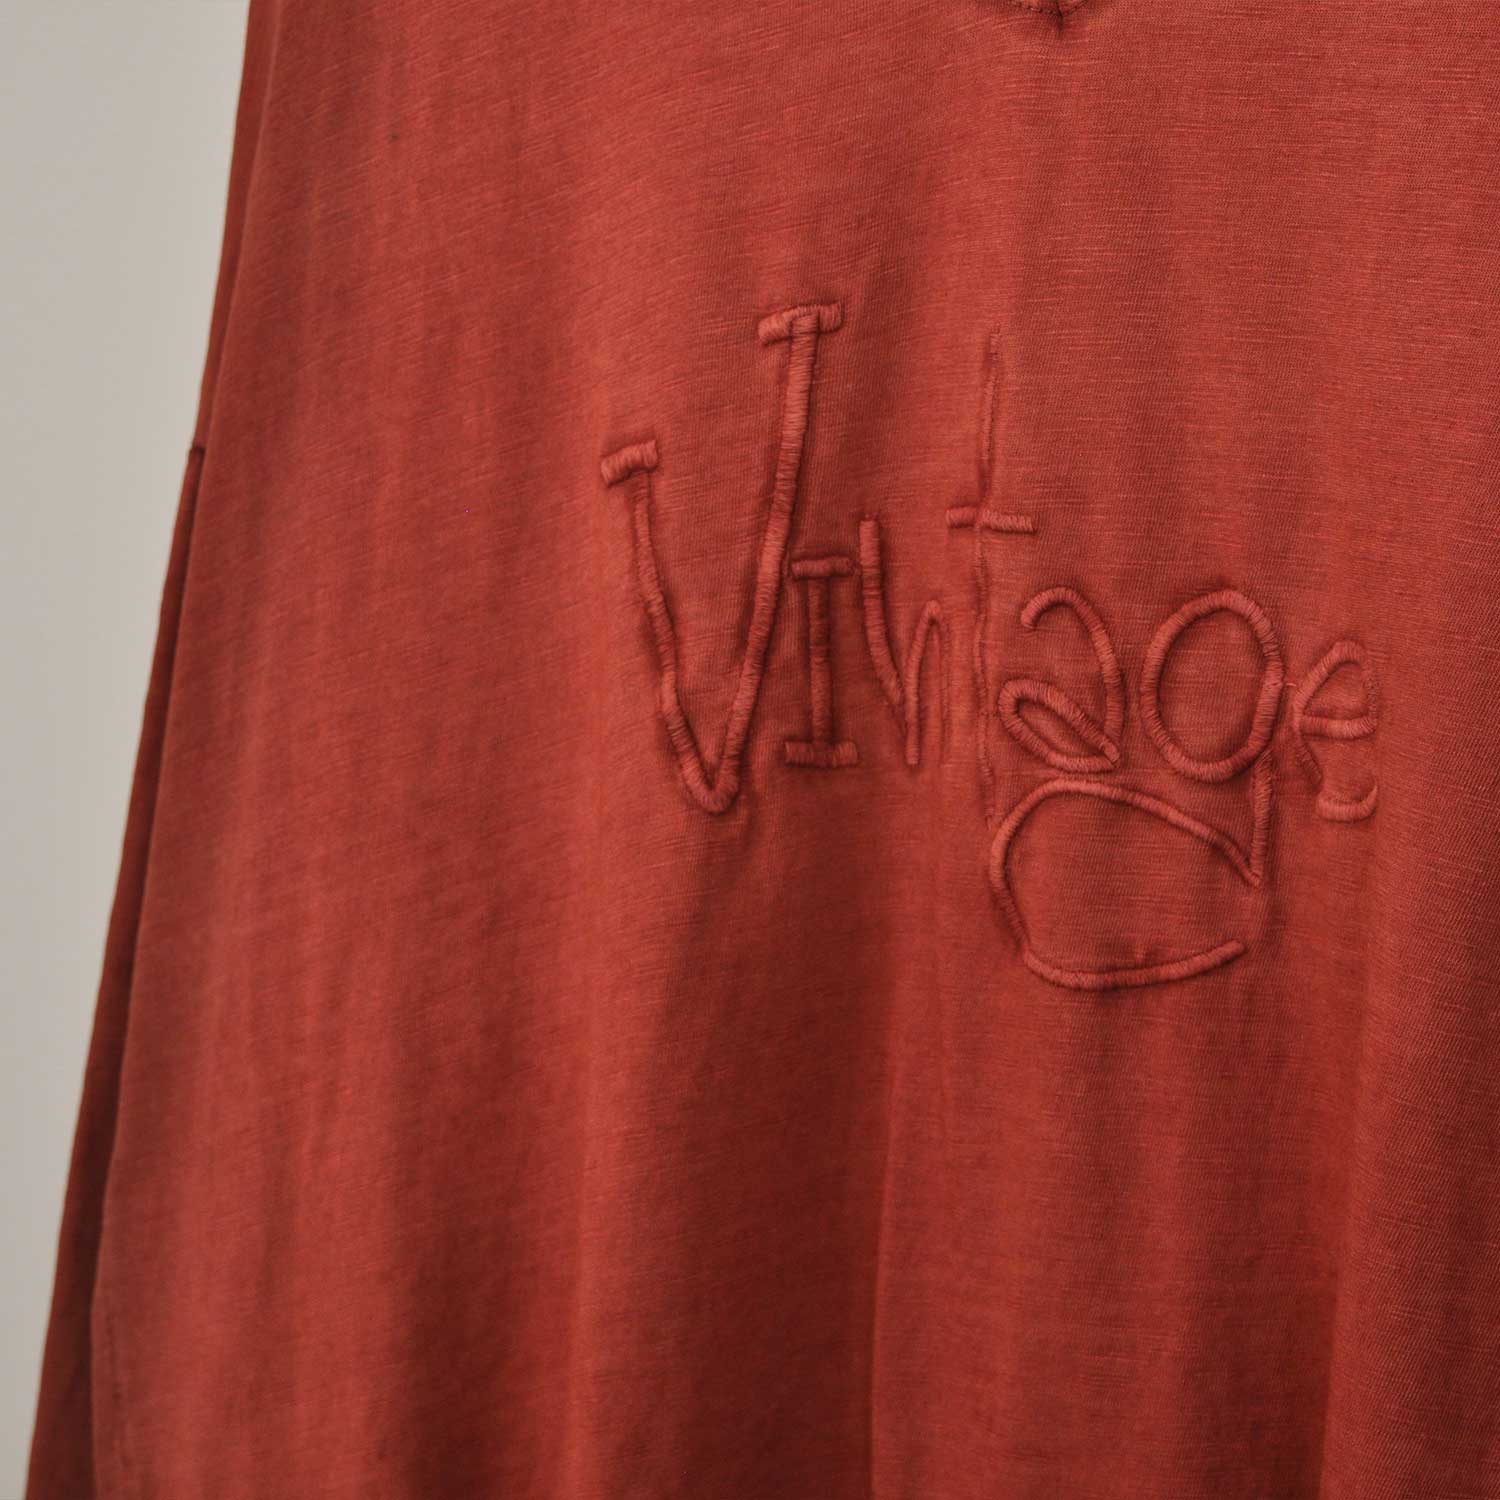 Camiseta Vintage teja